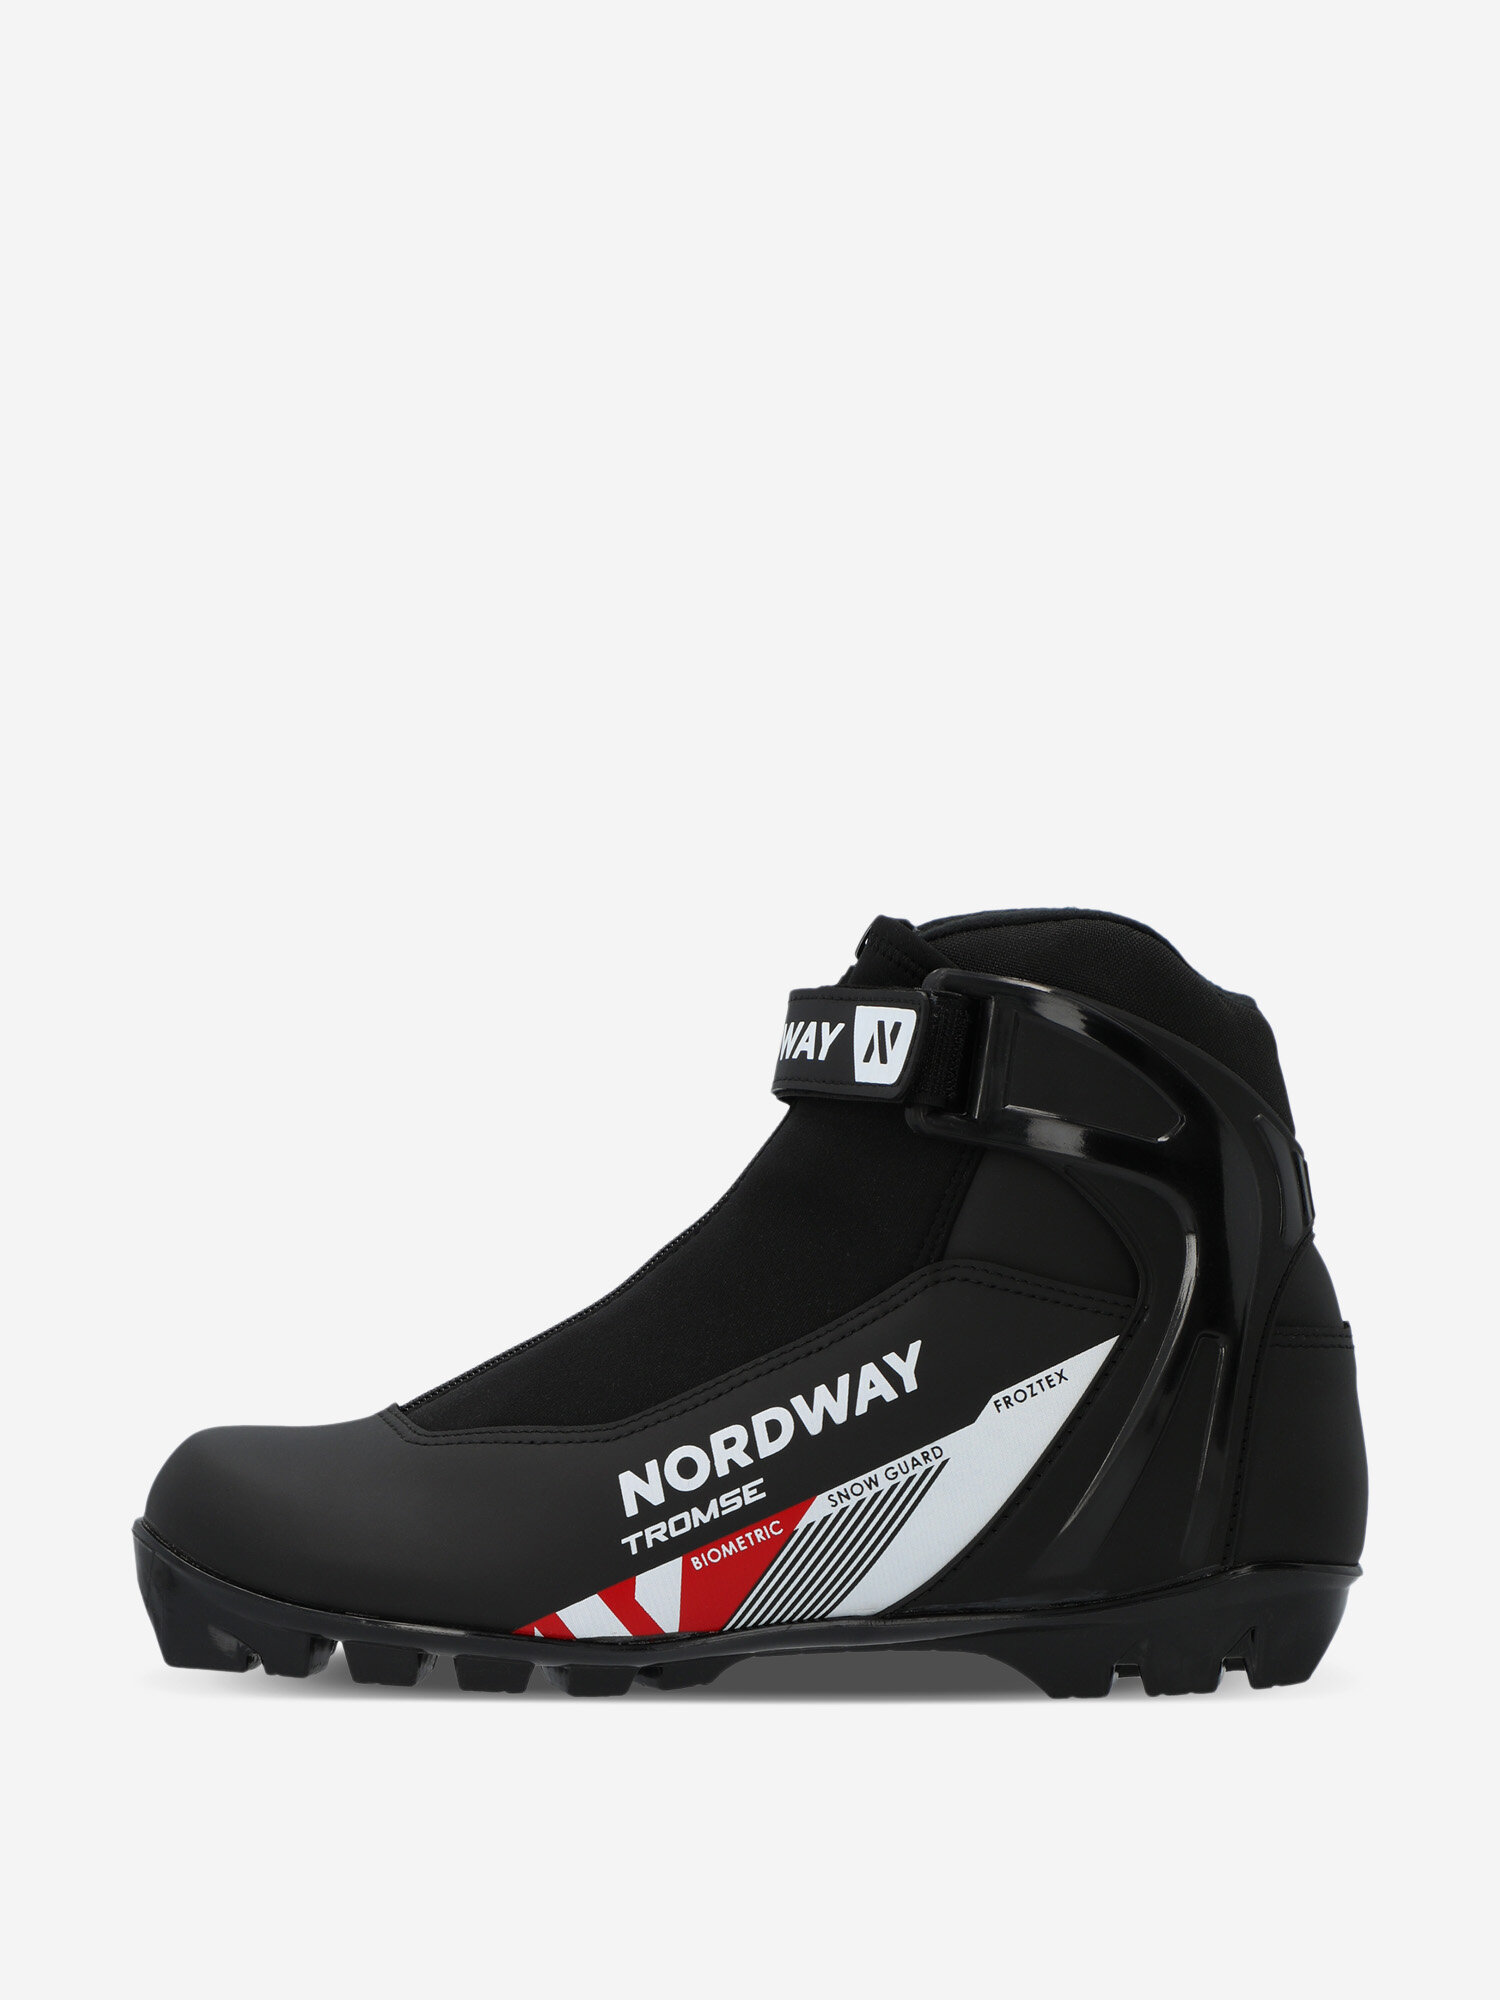 Ботинки для беговых лыж Nordway Tromse NNN Черный; RUS: 44, Ориг: 45